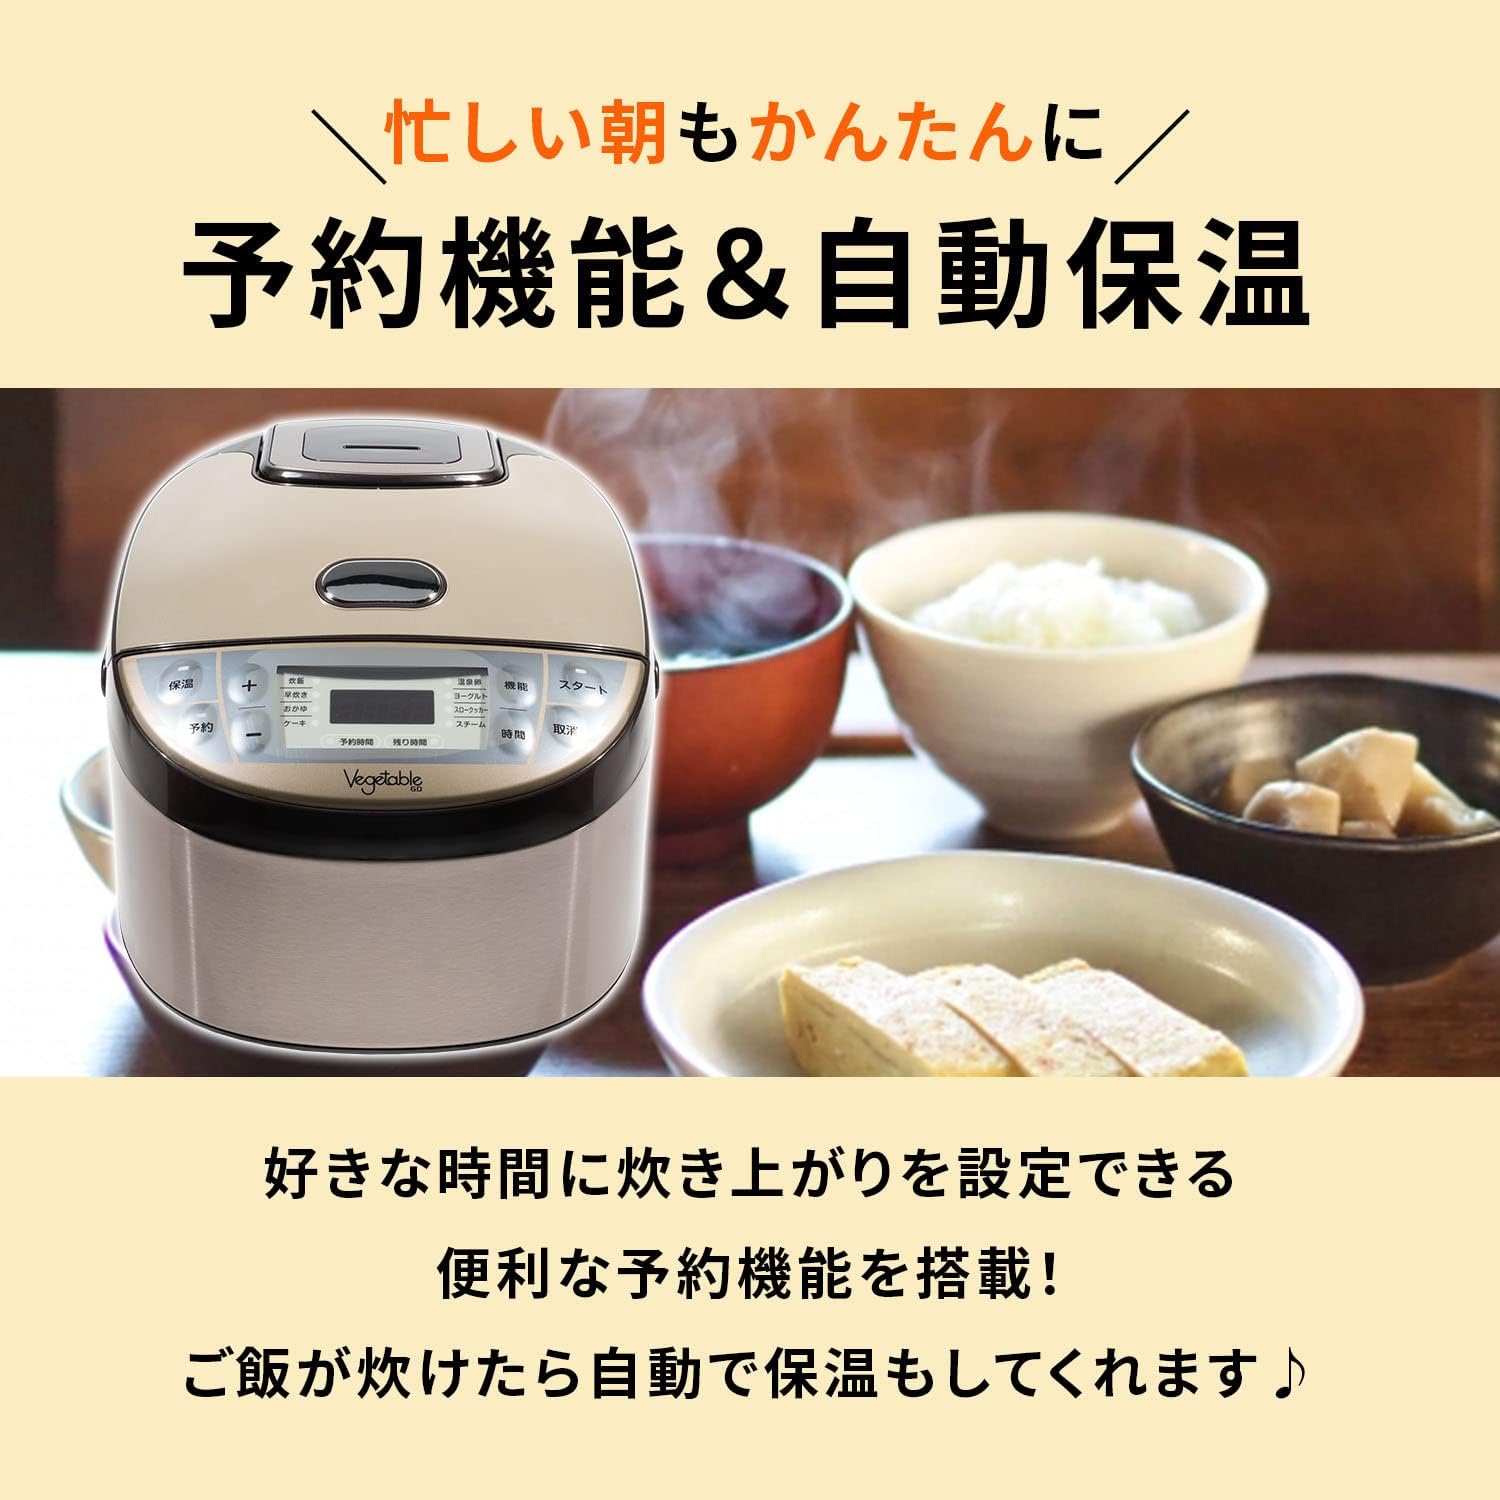 Vegetable マイコン炊飯ジャー5.5合 GD-M103 ダイアモンドヘッド 株式 